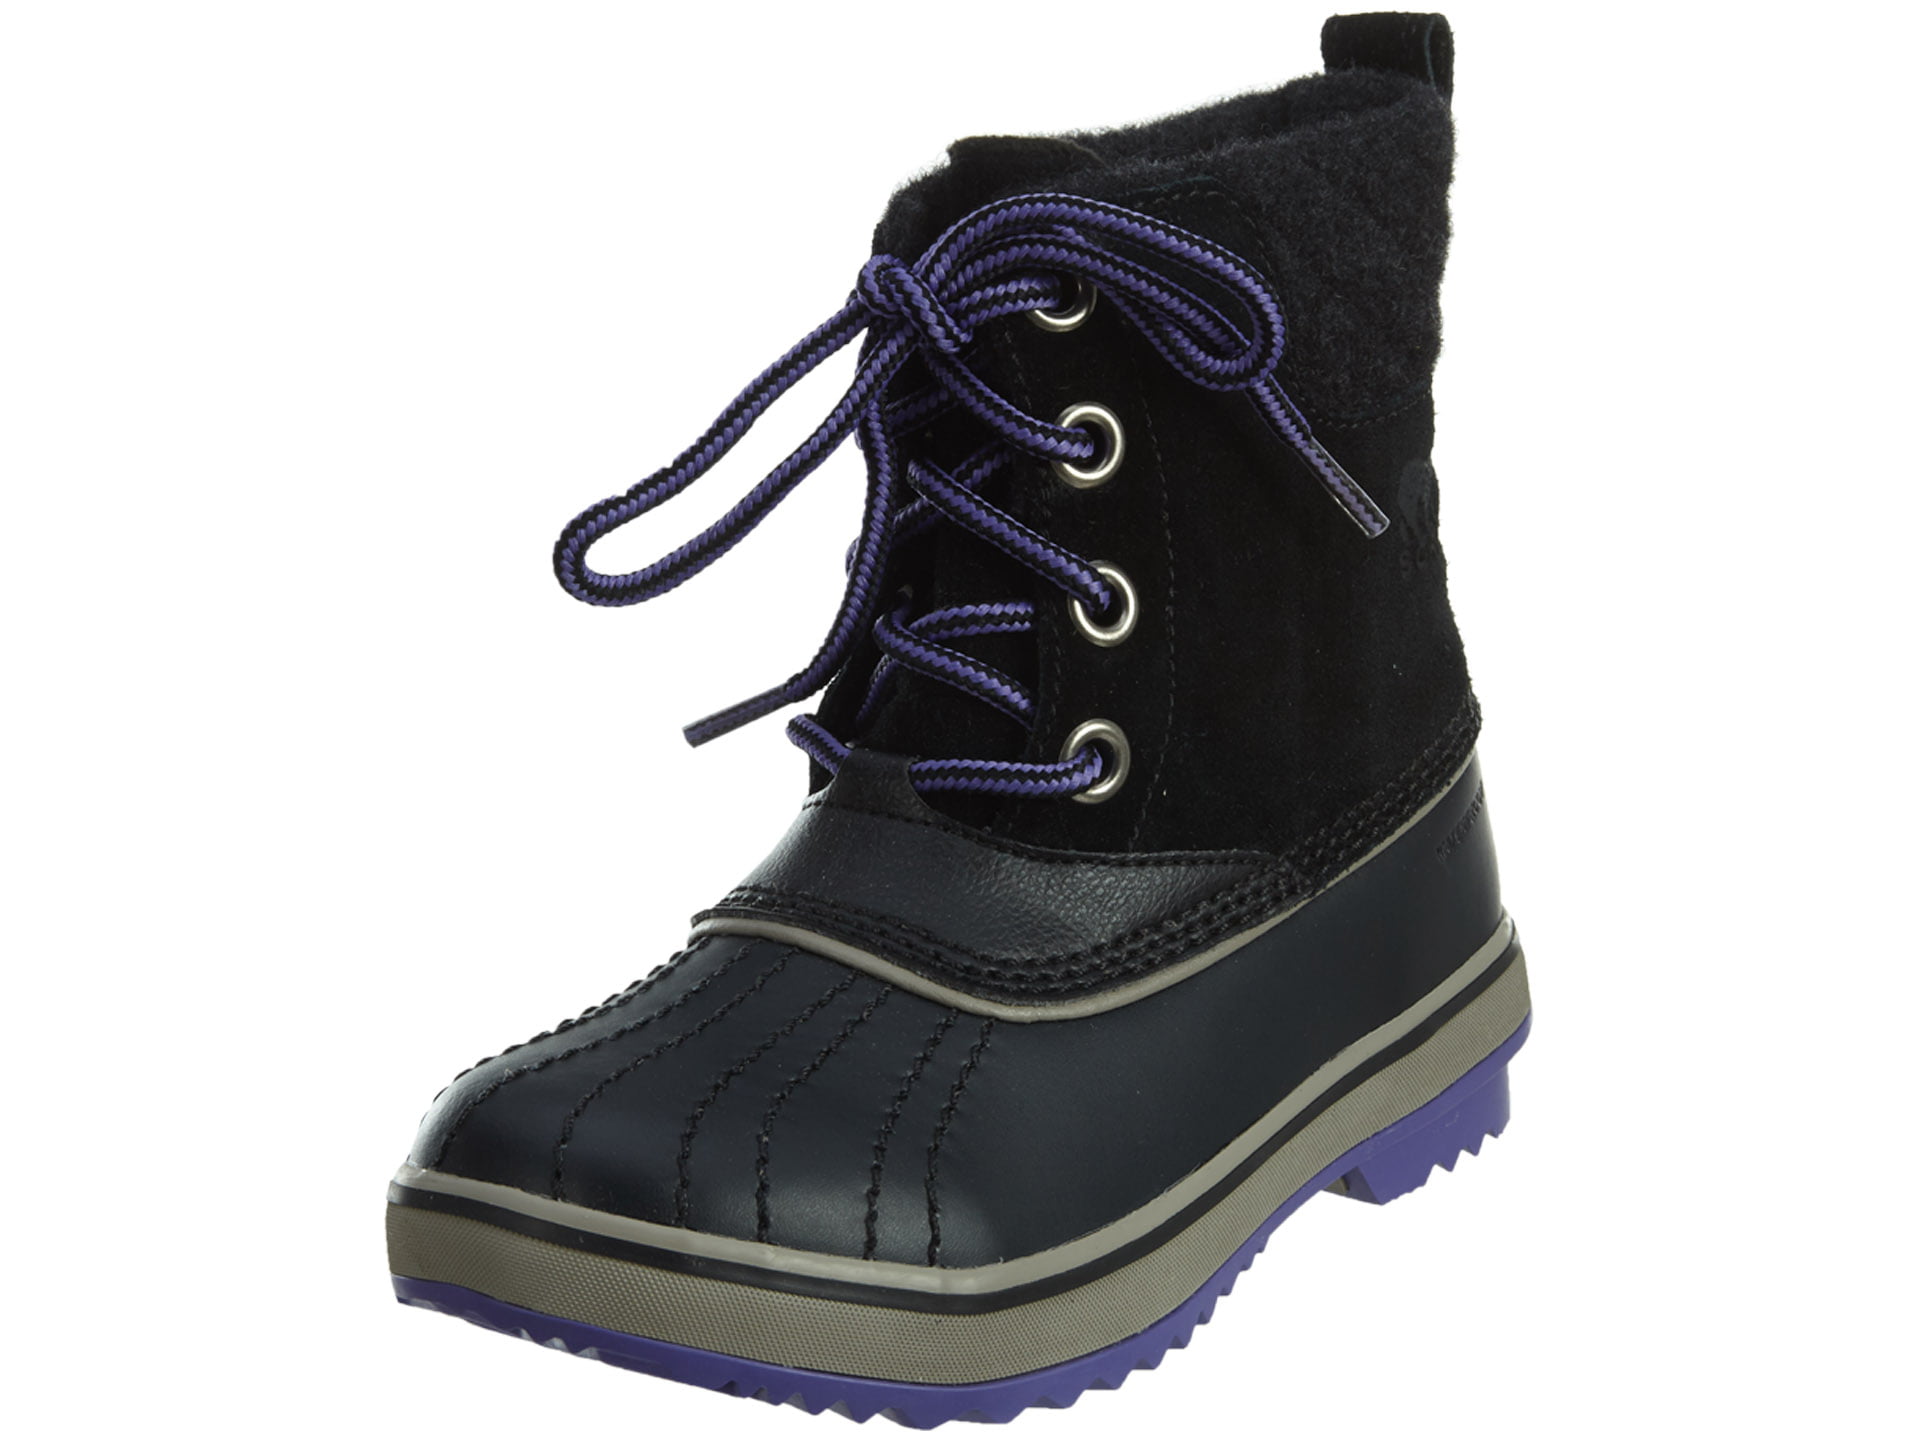 Sorel Youth Kids Slimpack Black/Kettle Waterproof snow boots NEW 